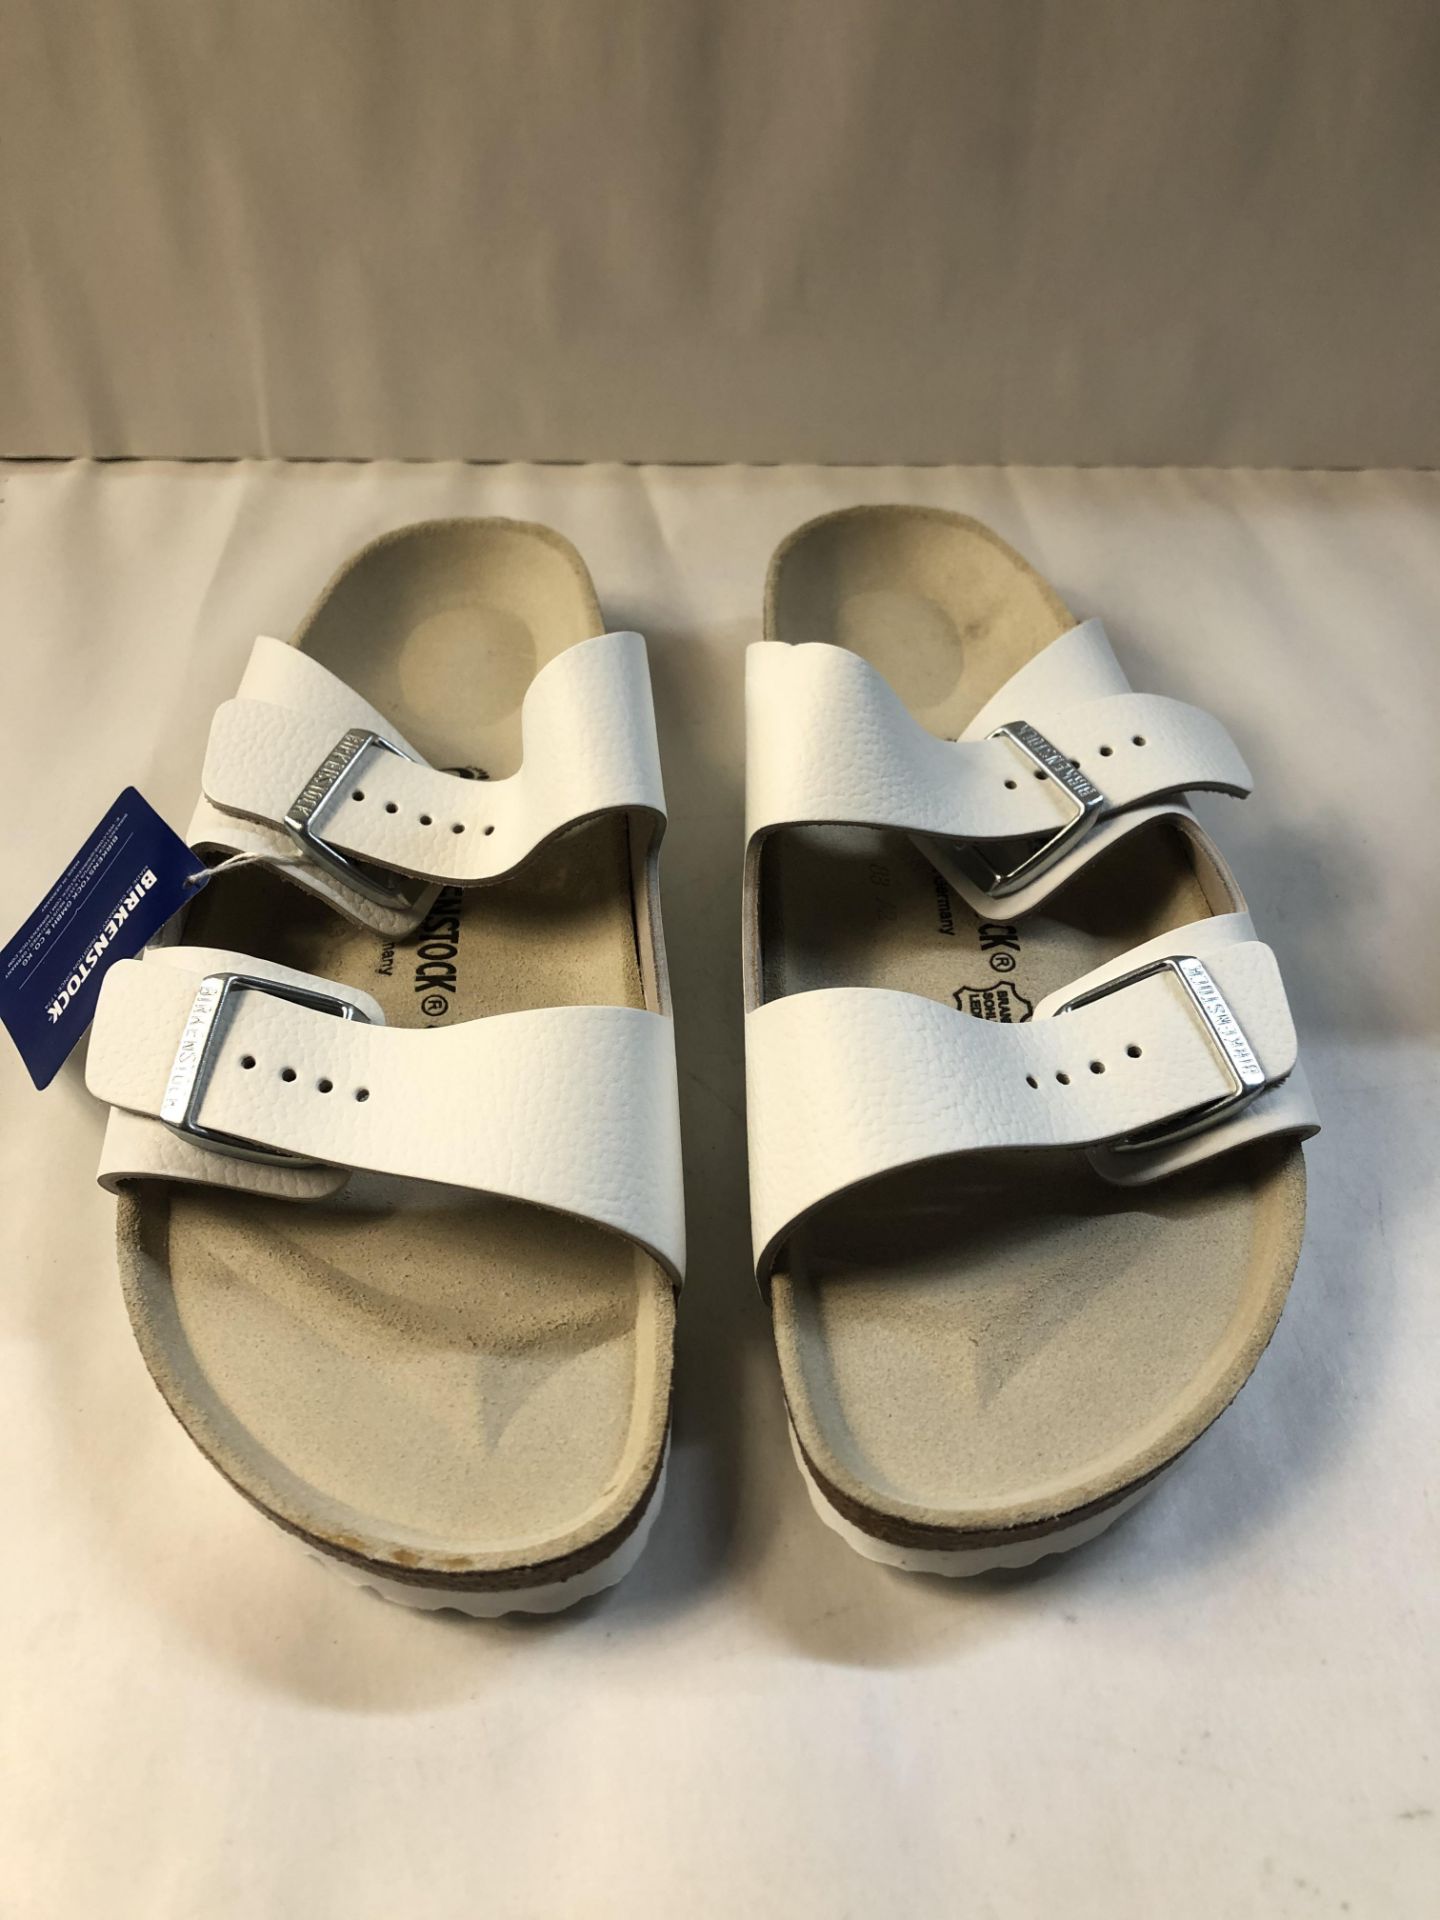 Birkenstock Unisex Adults' Arizona Slim Sandals, White (Weiss), 10.5 UK (Slim) (45 EU) 10.5 UK Unise - Image 3 of 3